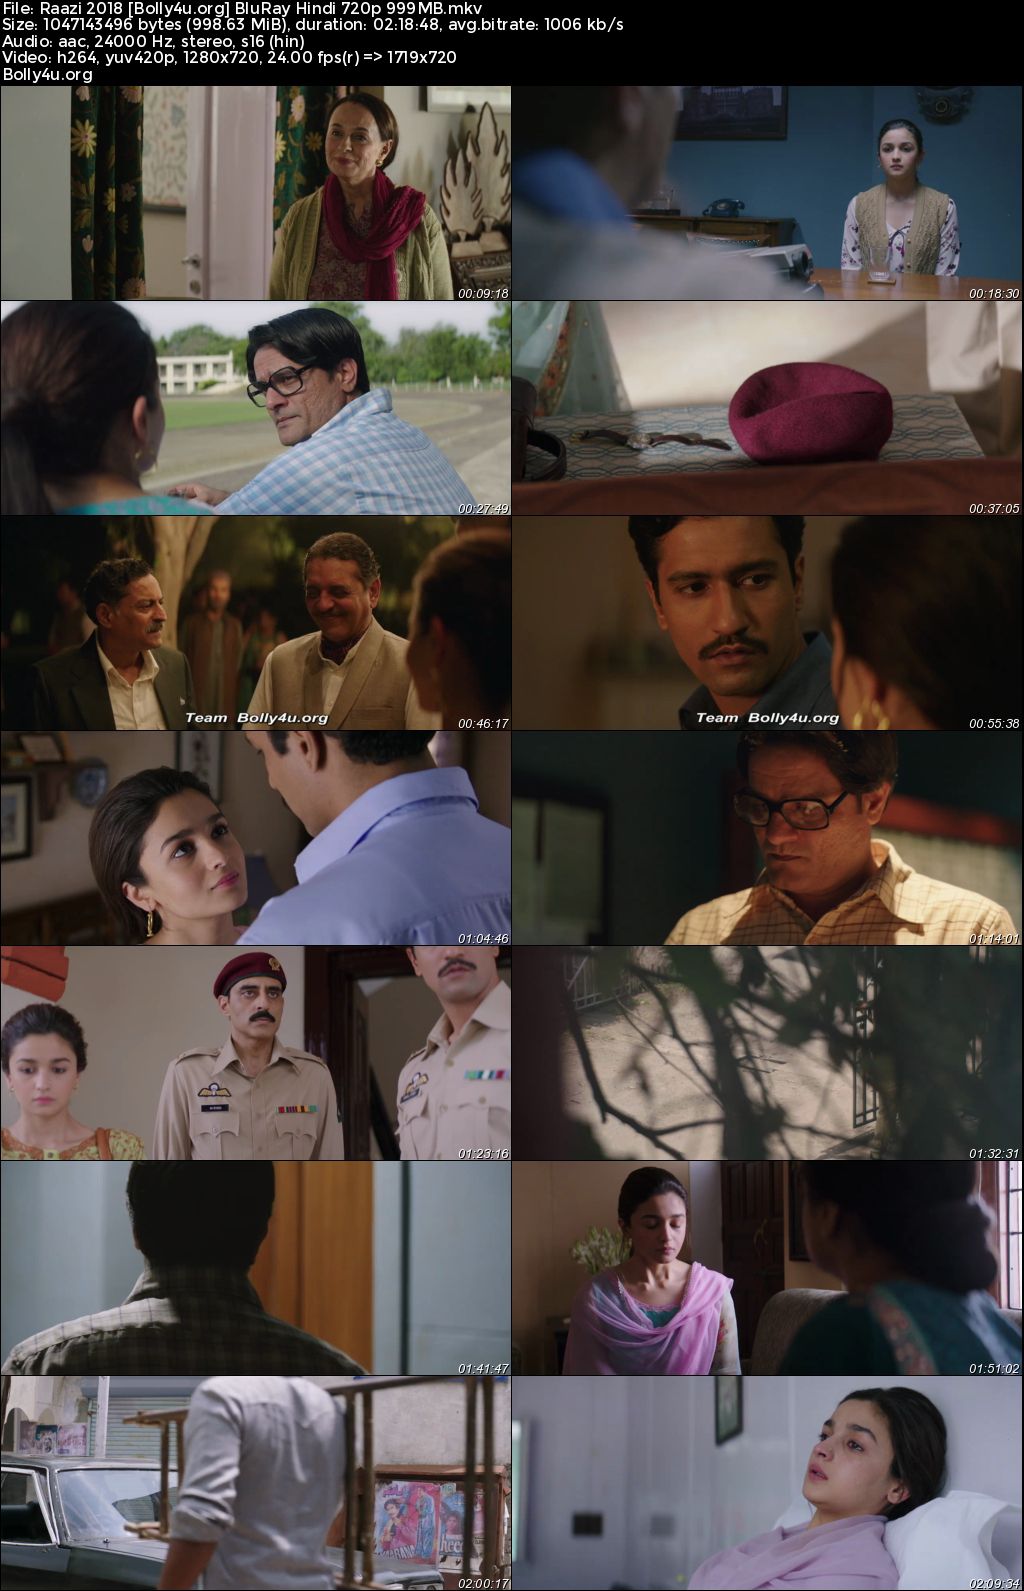 Raazi 2018 BluRay Hindi Full Movie Download 1080p 720p 480p